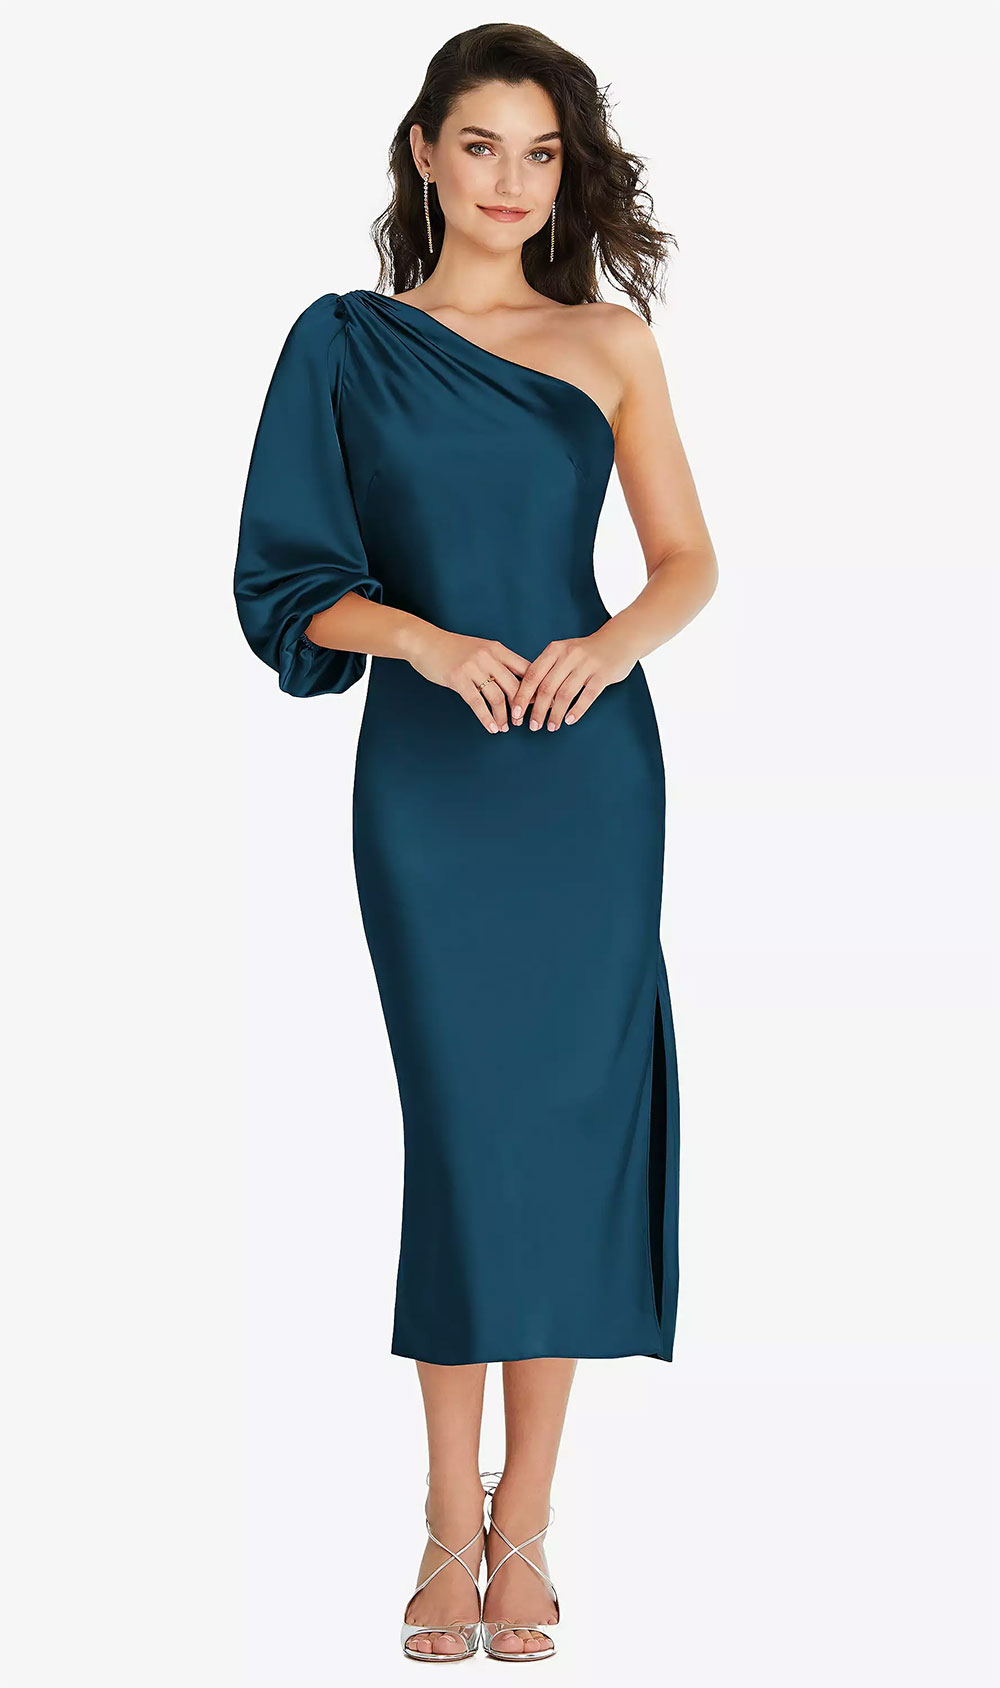 elegant one shoulder bishop sleeve bridesmaid dress in atlantic blue